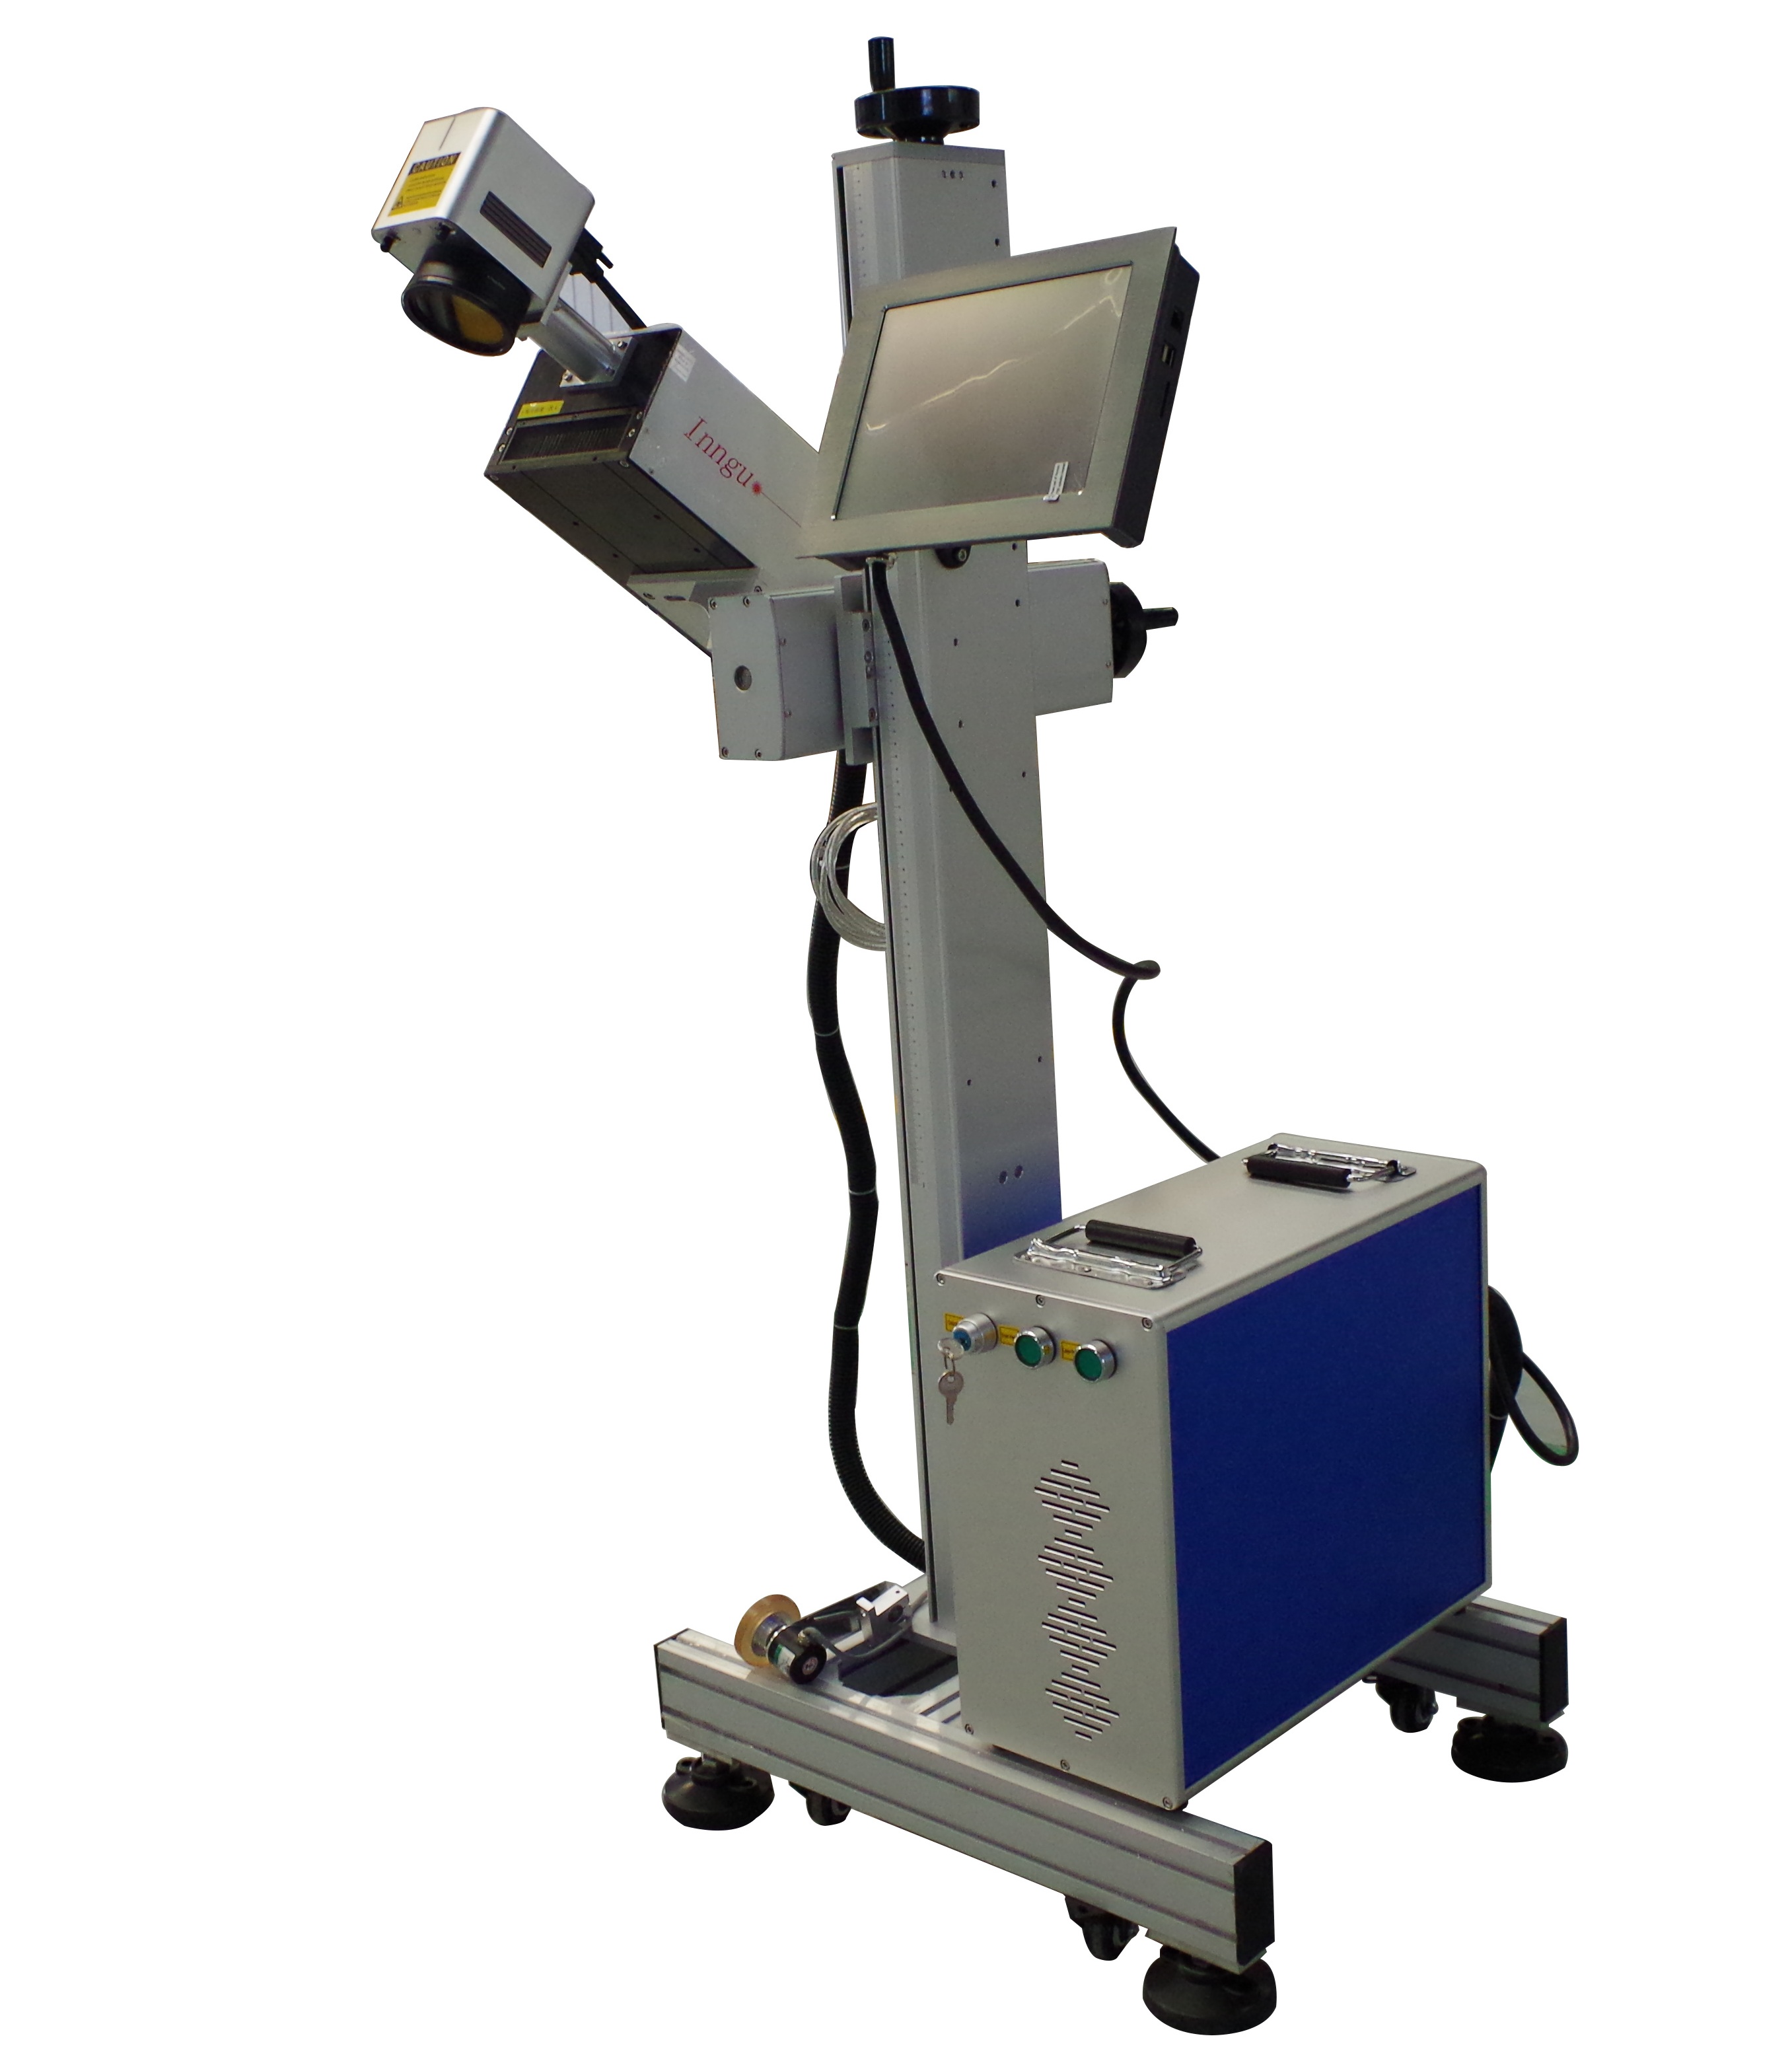 ماكينة وسم طابعة الليزر UV بقدرة 3 وات 5 وات لتمييز تغليف المواد الغذائية PET PP ، Qr Code Bar Code Laser Marker